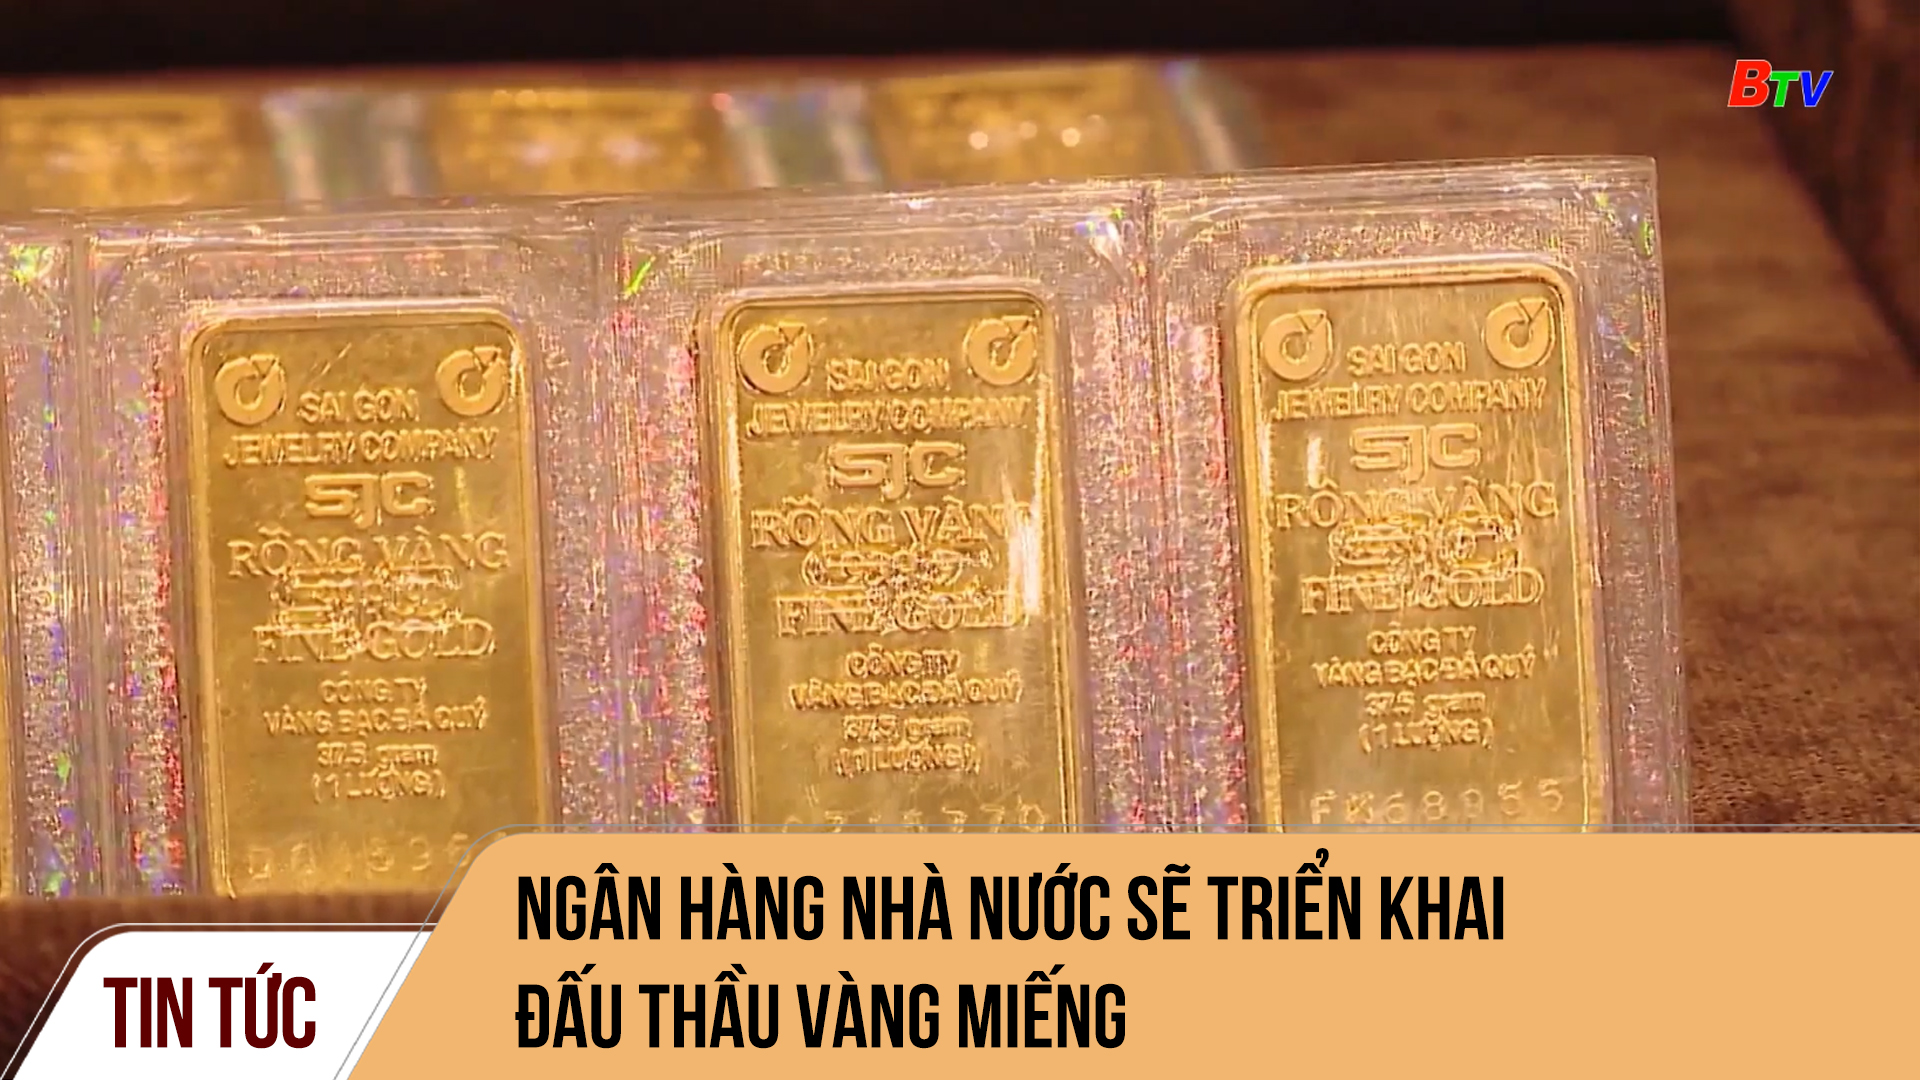 Ngân hàng nhà nước sẽ triển khai đấu thầu vàng miếng